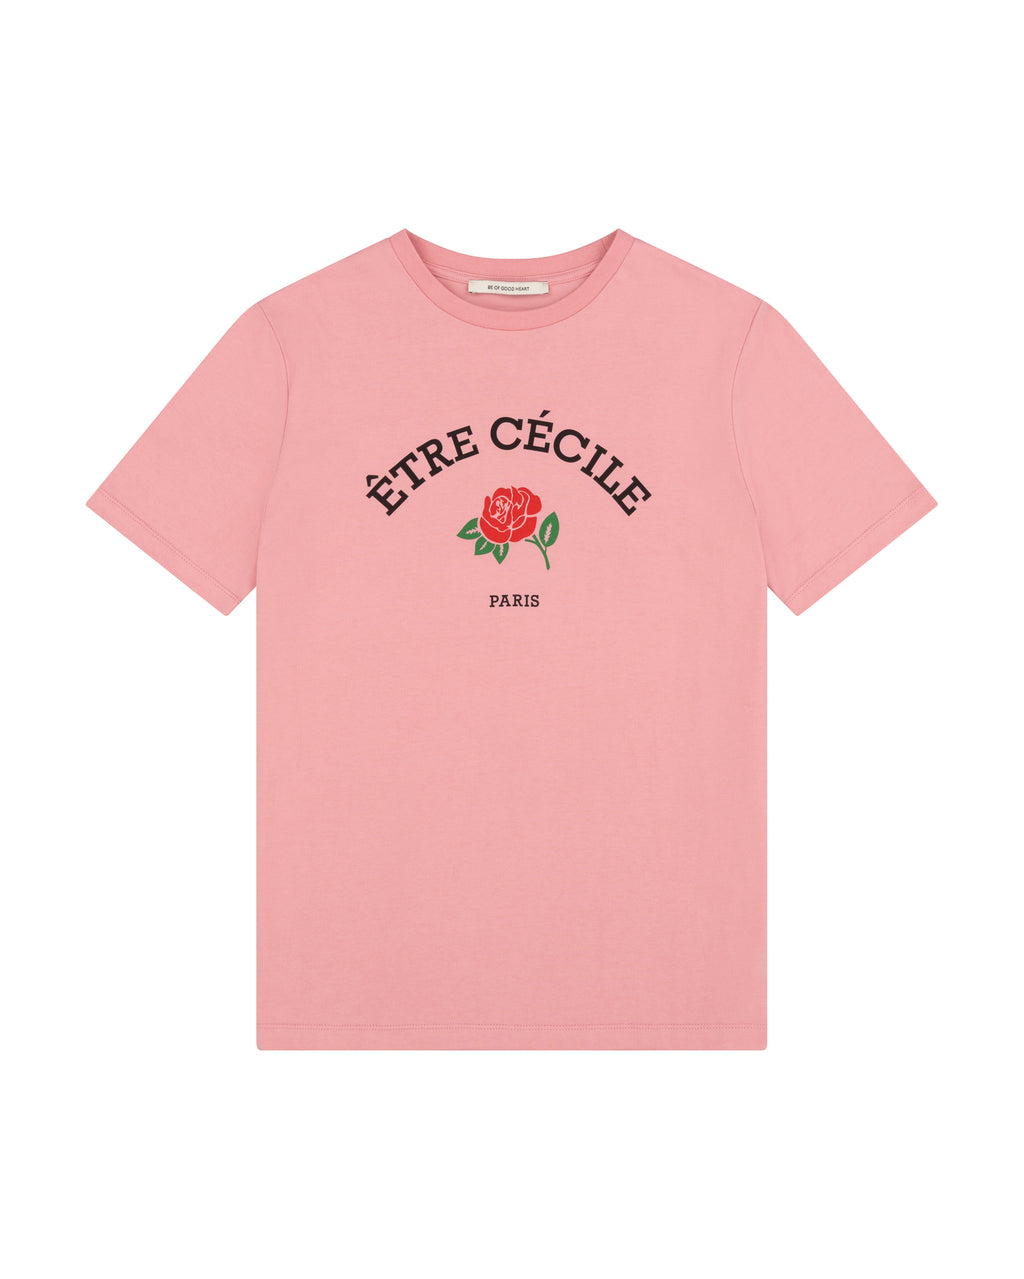 Etre Cecile Rose Classic T-Shirt - Cécile Être